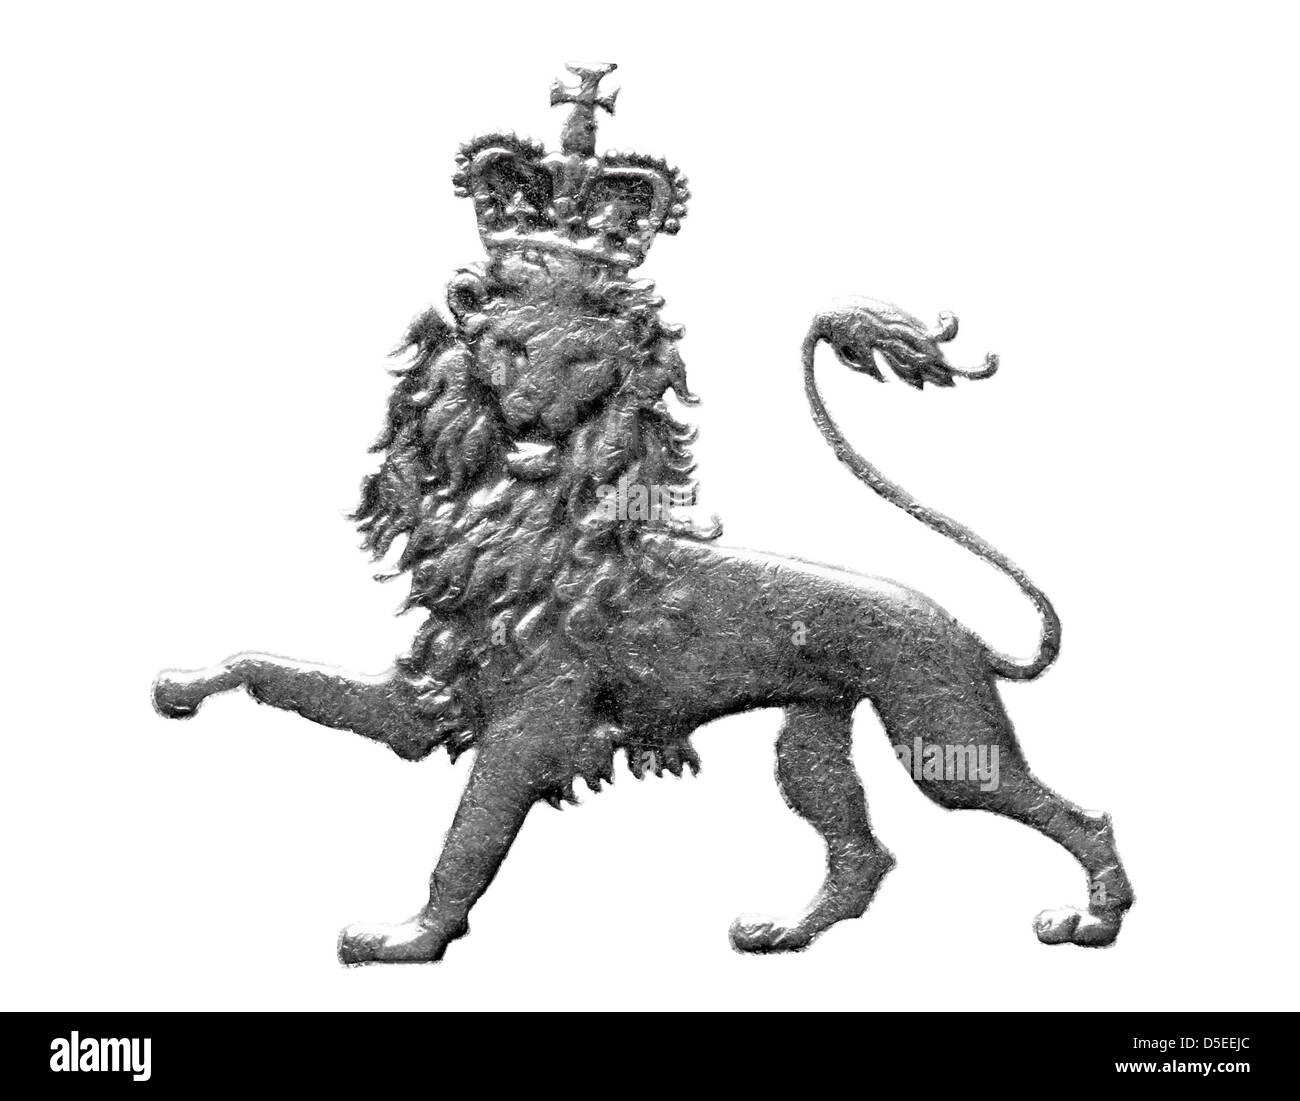 Lion couronné à partir de 10 pence coins, UK, 2003, sur fond blanc Banque D'Images